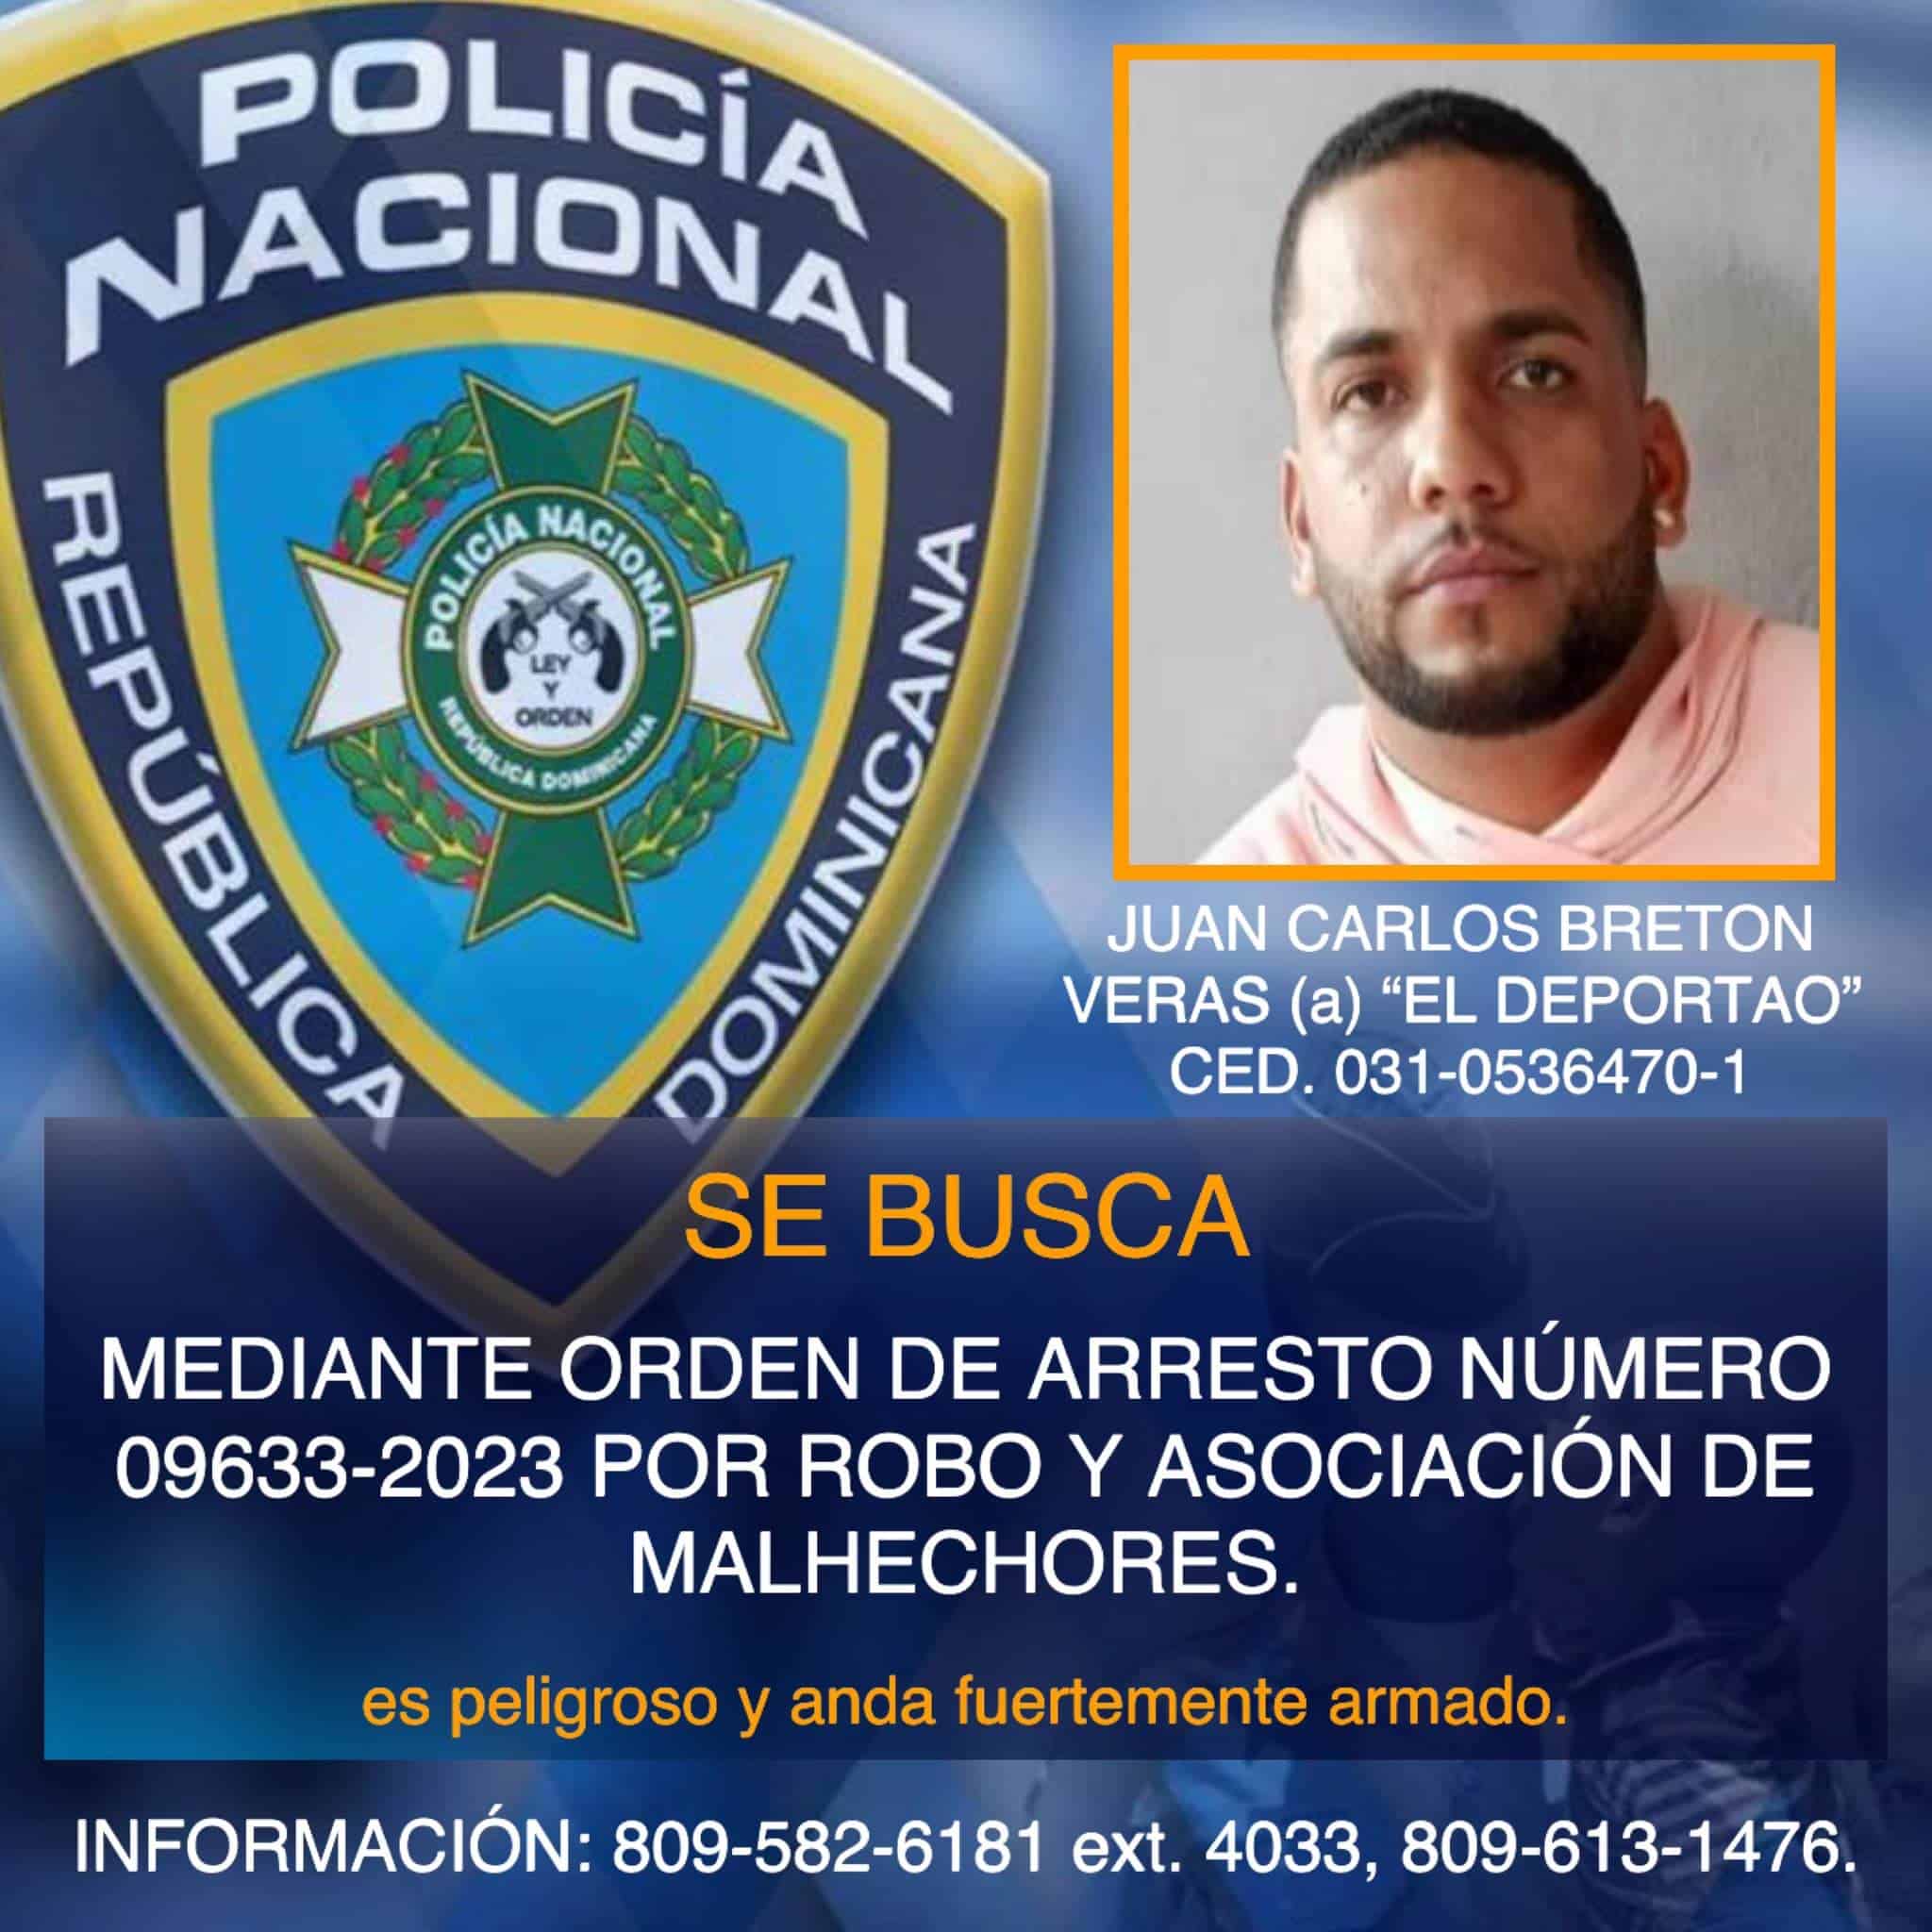 Juan Carlos Bretón Veras (a) El deportao